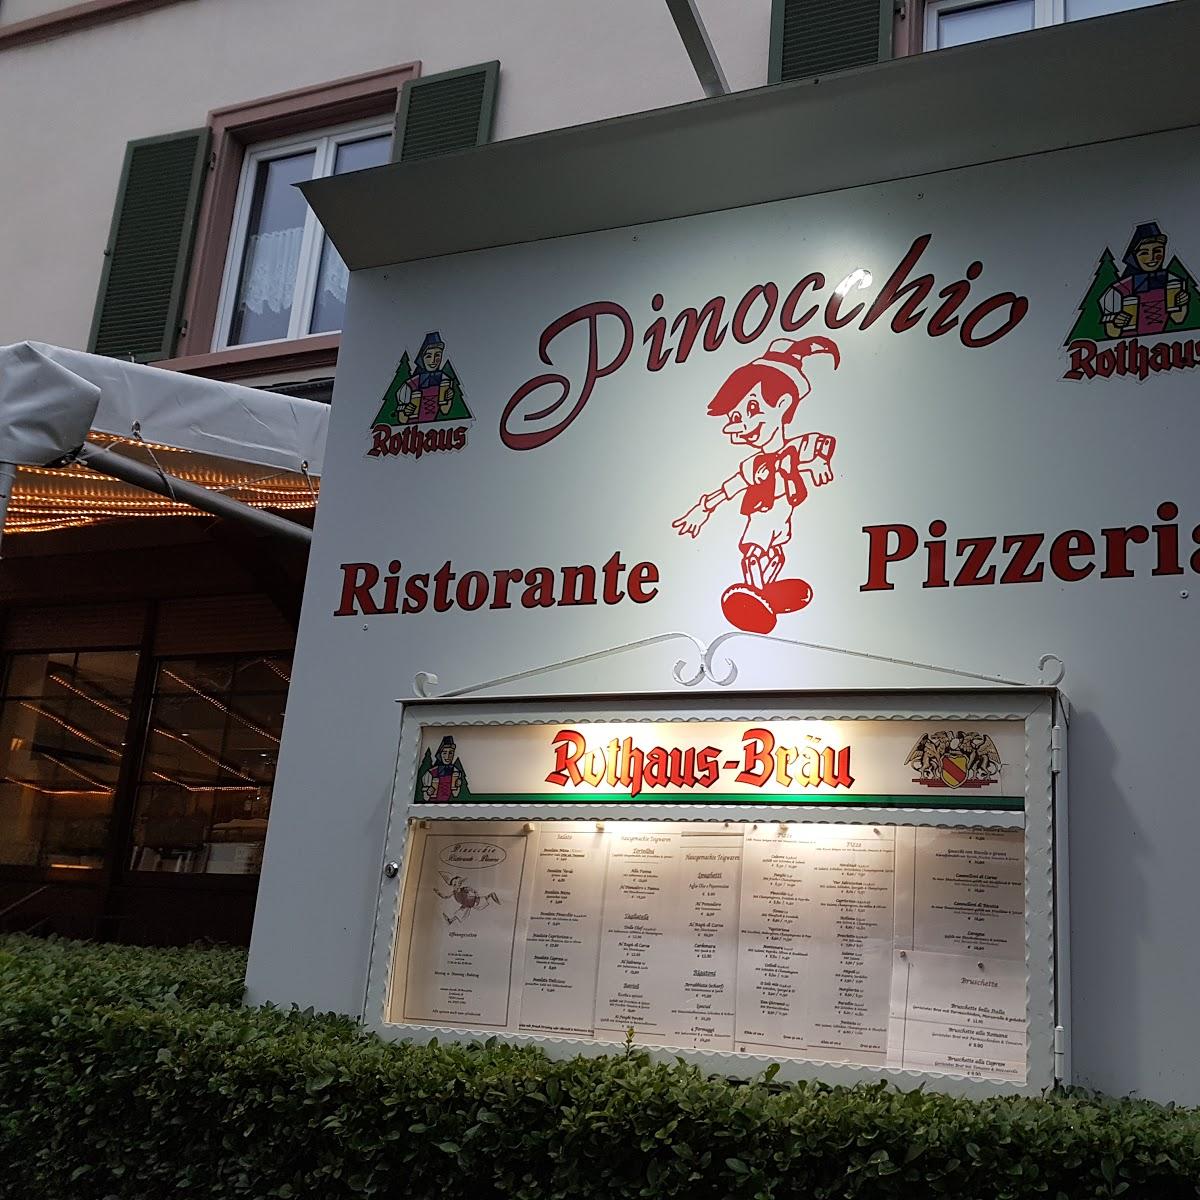 Restaurant "Pizzeria Pinocchio" in Lörrach